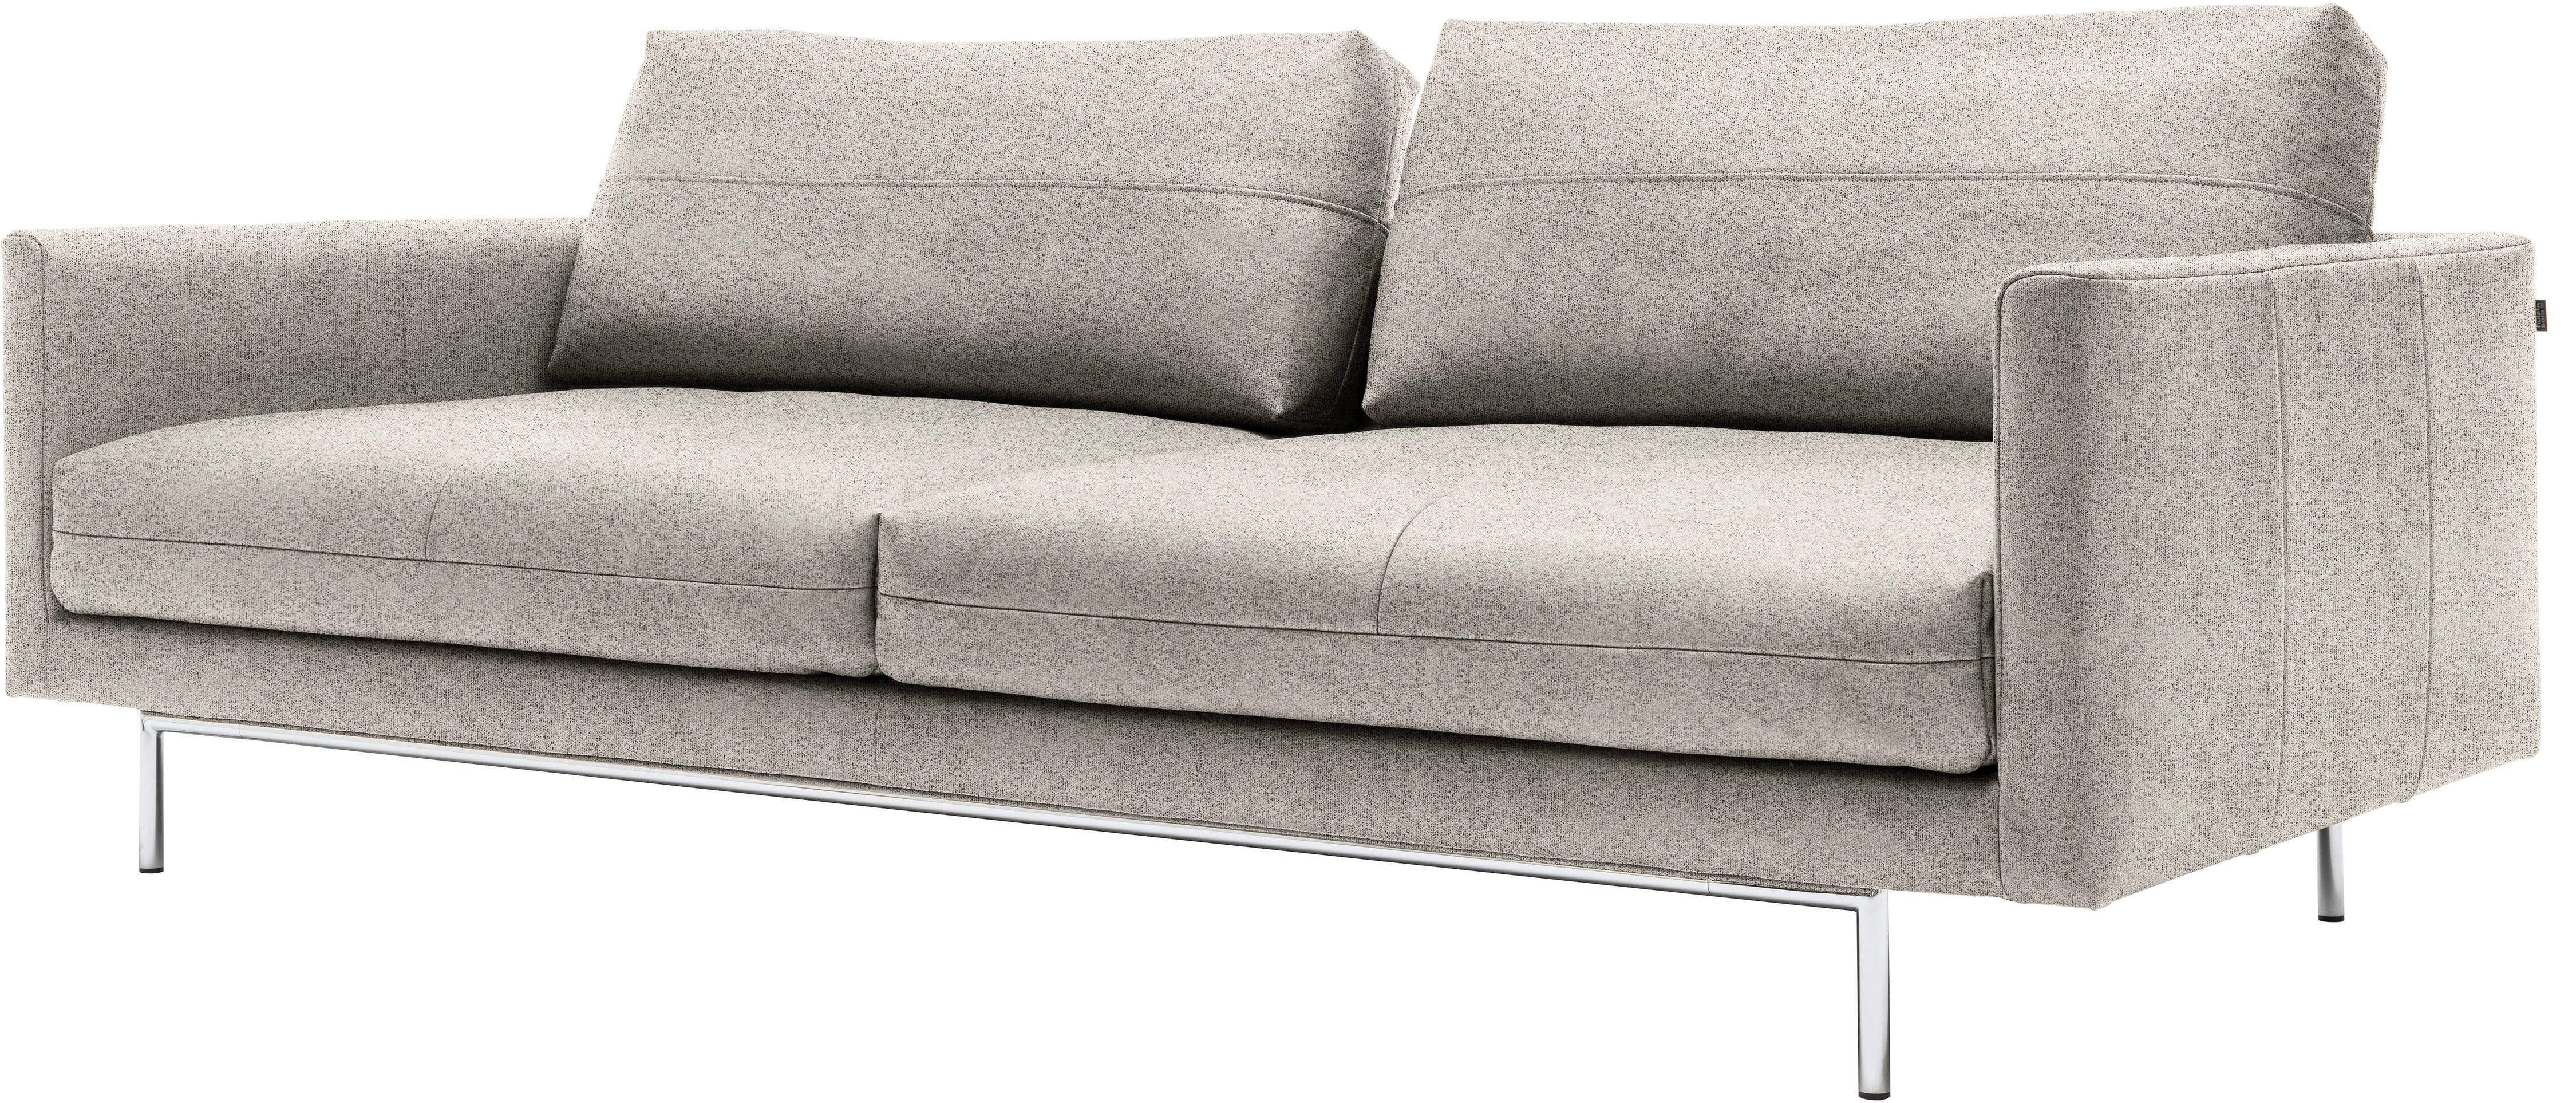 seidengrau | seidengrau hülsta 3-Sitzer sofa